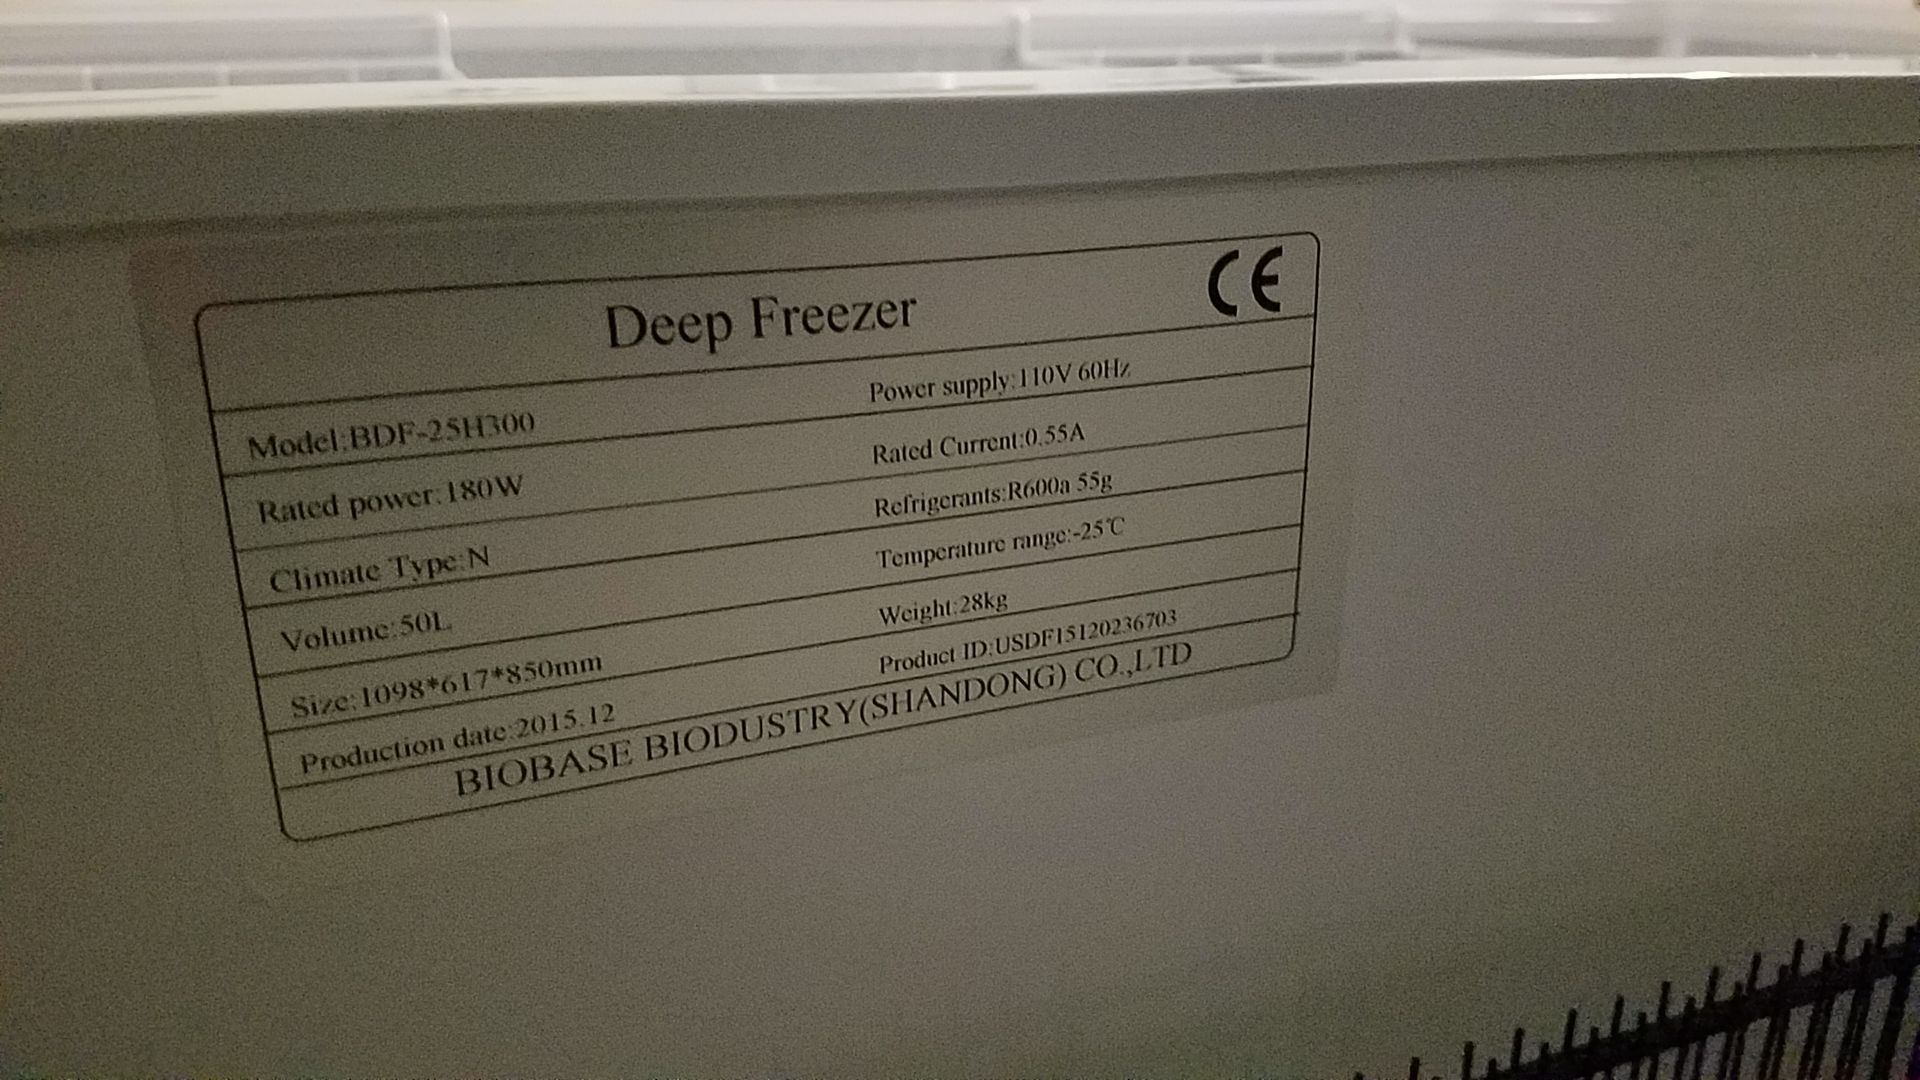 Biobase Deep Freezer - Image 2 of 2